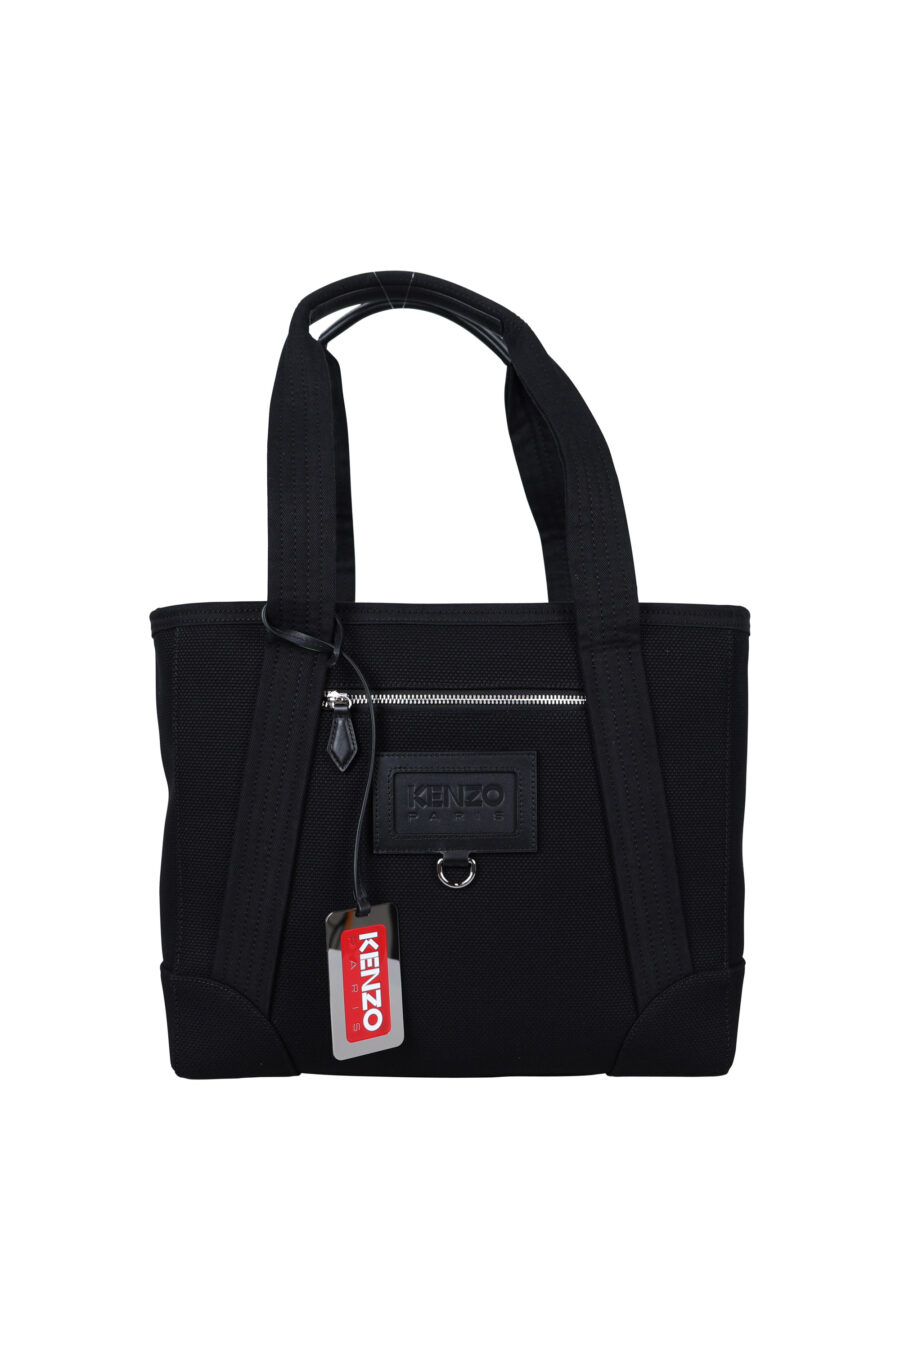 Tote bag with minilogo "kenzo paris" - 3612230546899